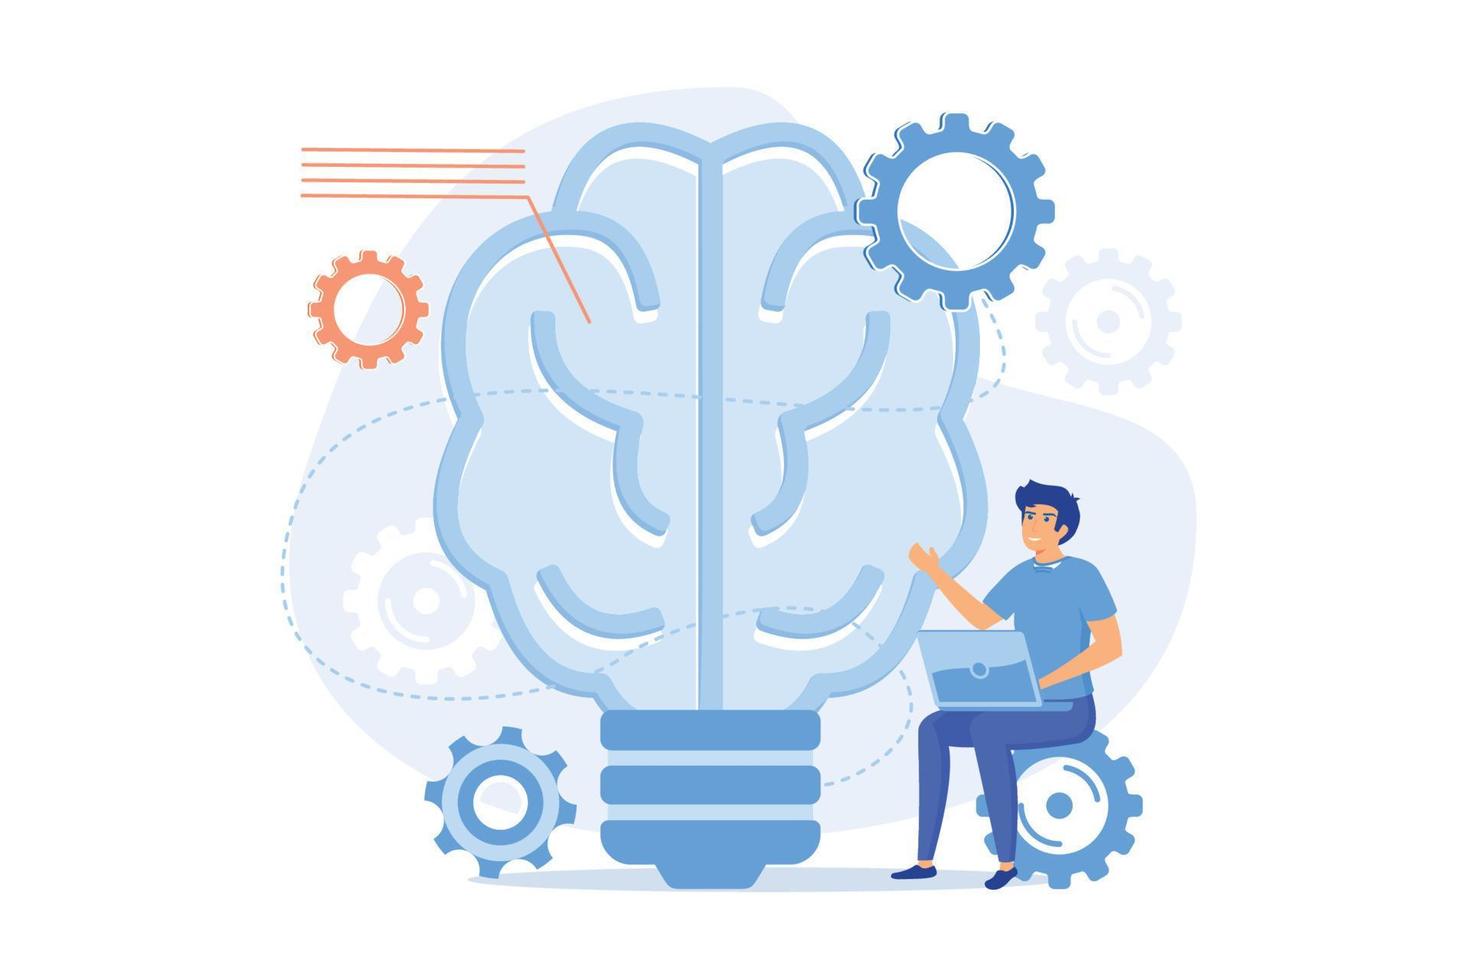 mänsklig hjärna med kugghjul tänkande och användare. skapande idéer och tankar, brainstorming, kreativitet och företag idéer, tänkande och uppfinning begrepp vektor